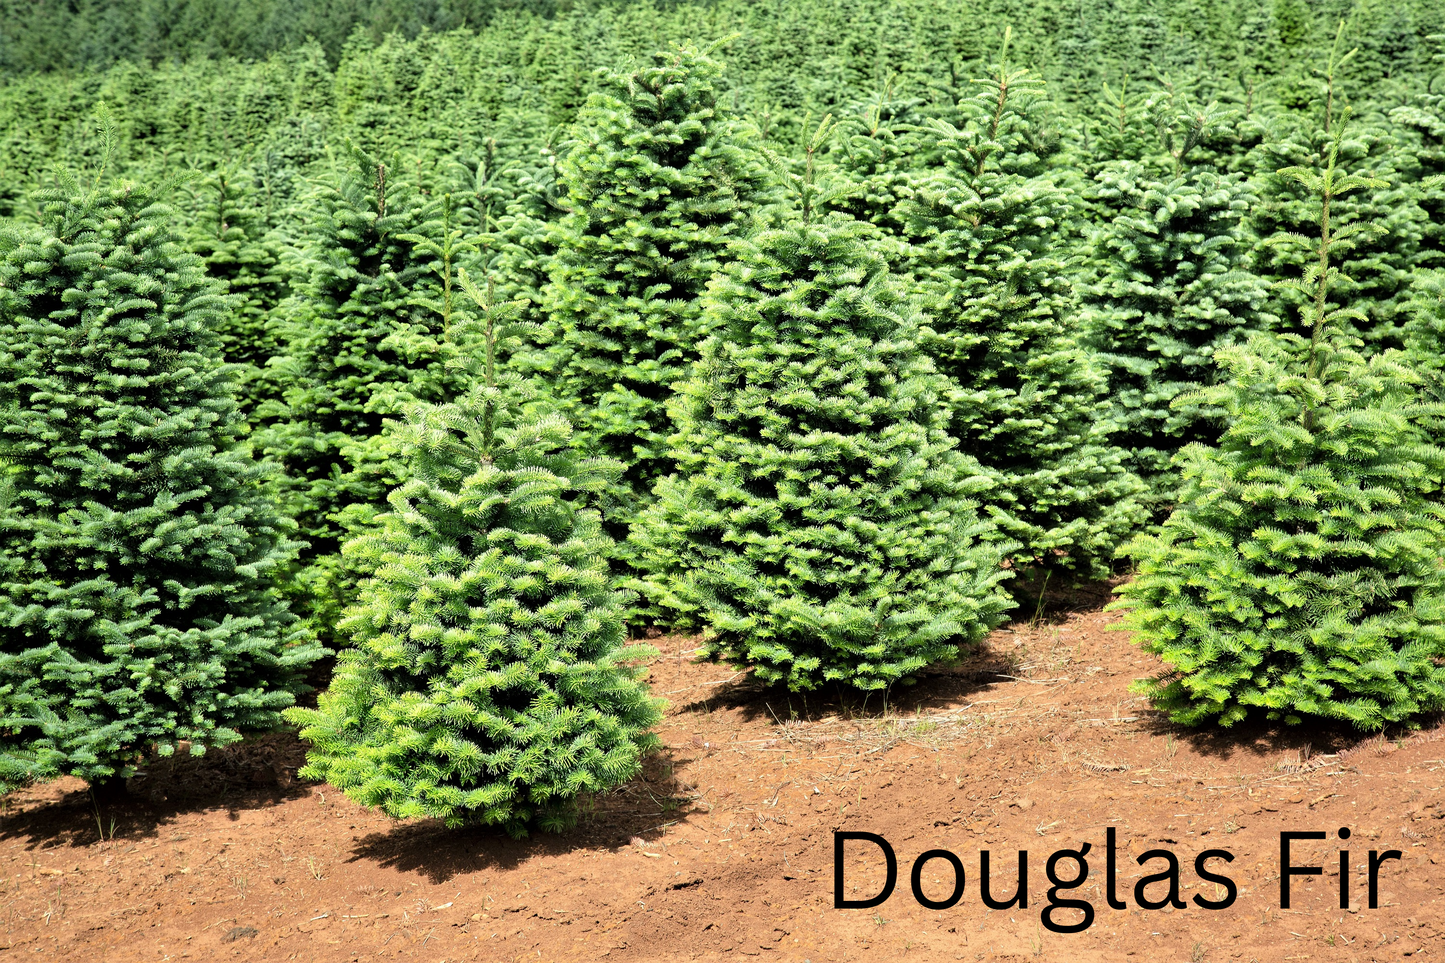 Grow Your Own CHRISTMAS TREE COLLECTION - 4 Gift Packets of Tree Seeds - Fraser Fir, Balsam Fir, Douglas Fir, & Blue Spruce + Free Gift Bag